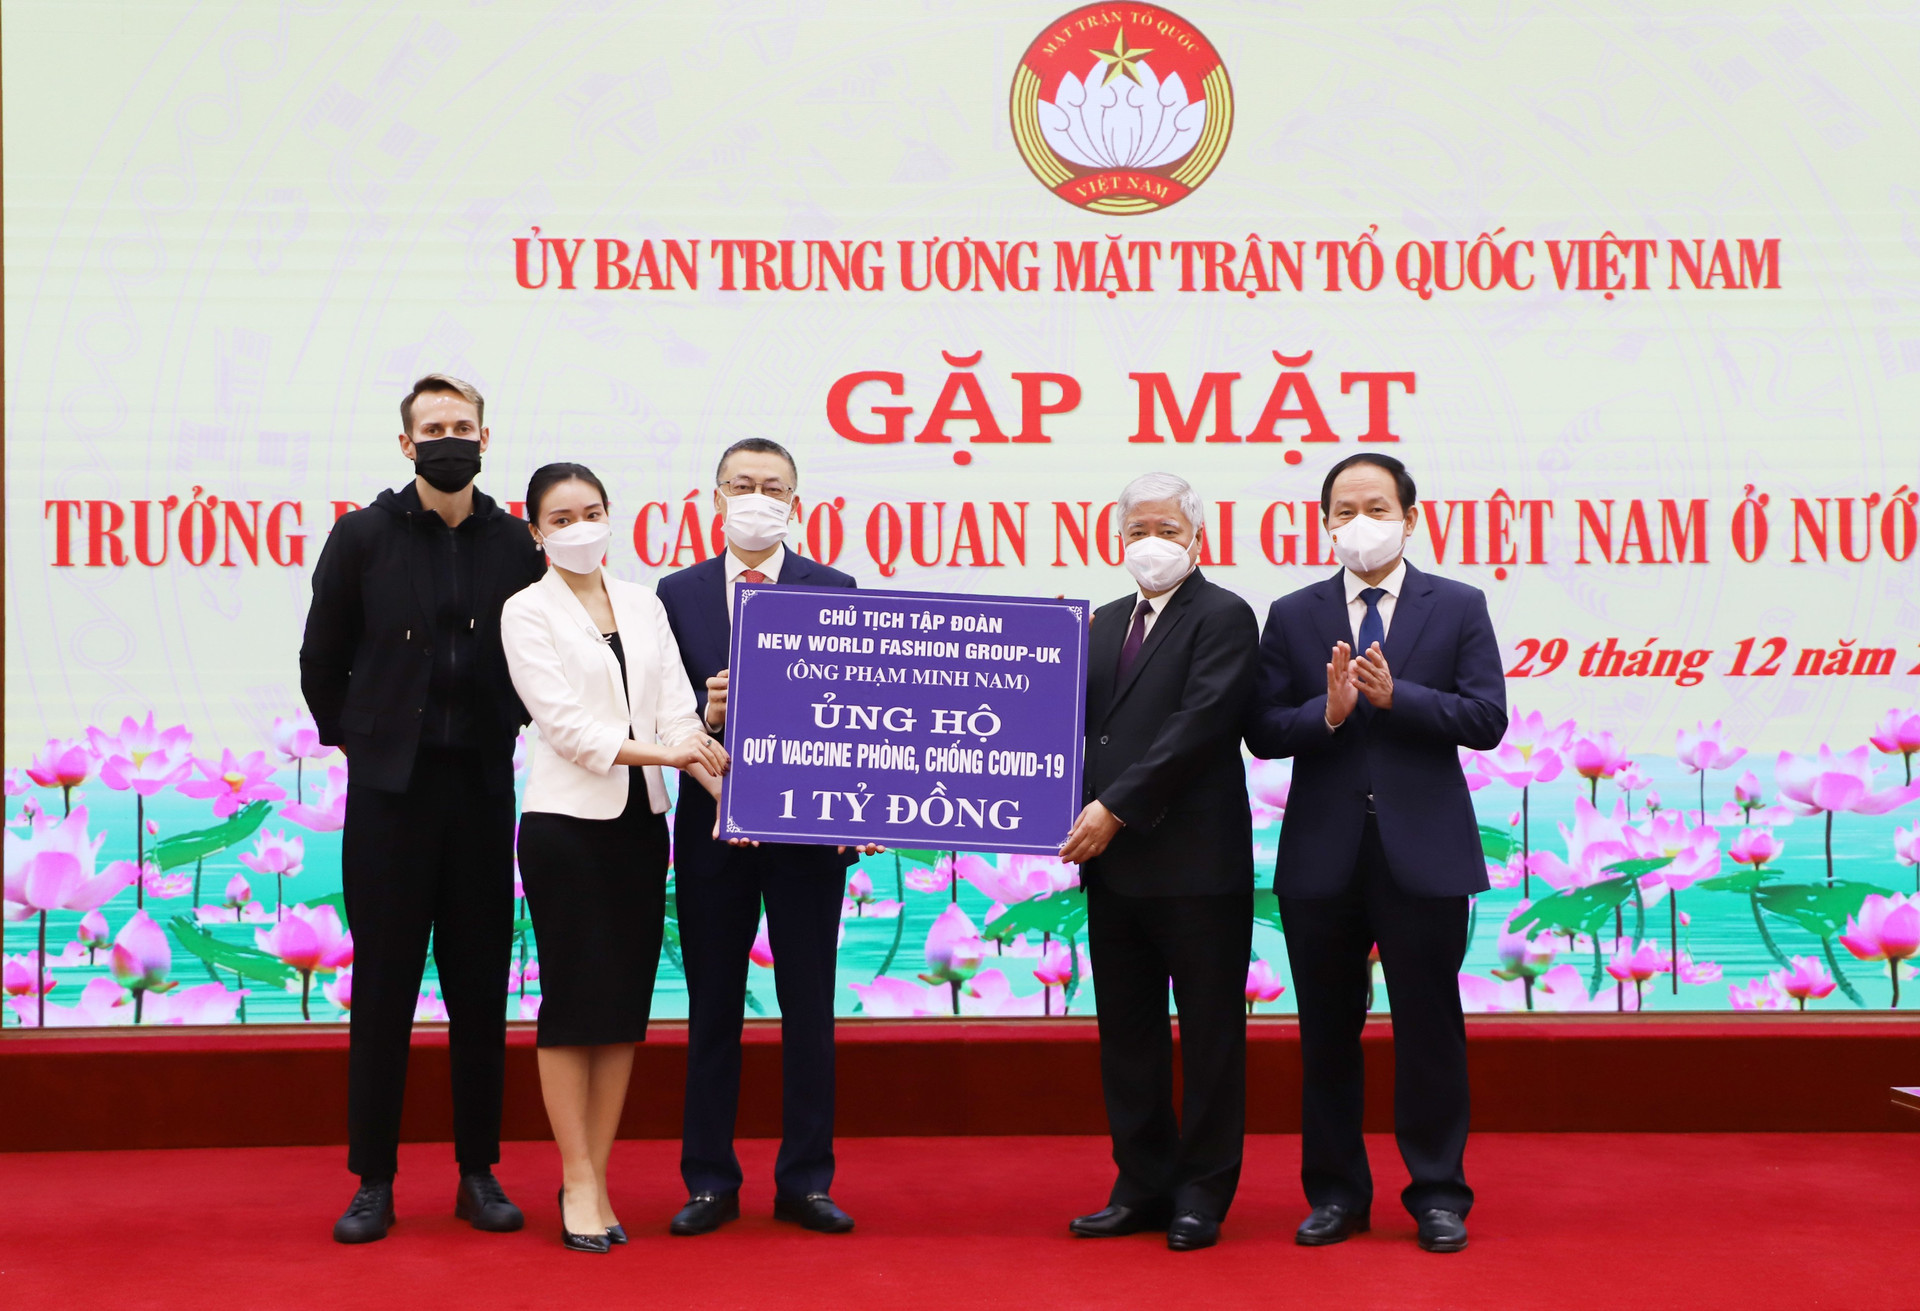 Ban Thường trực Ủy ban Trung ương MTTQ Việt Nam tiếp nhận ủng hộ Quỹ Vaccine phòng, chống Covid-19.